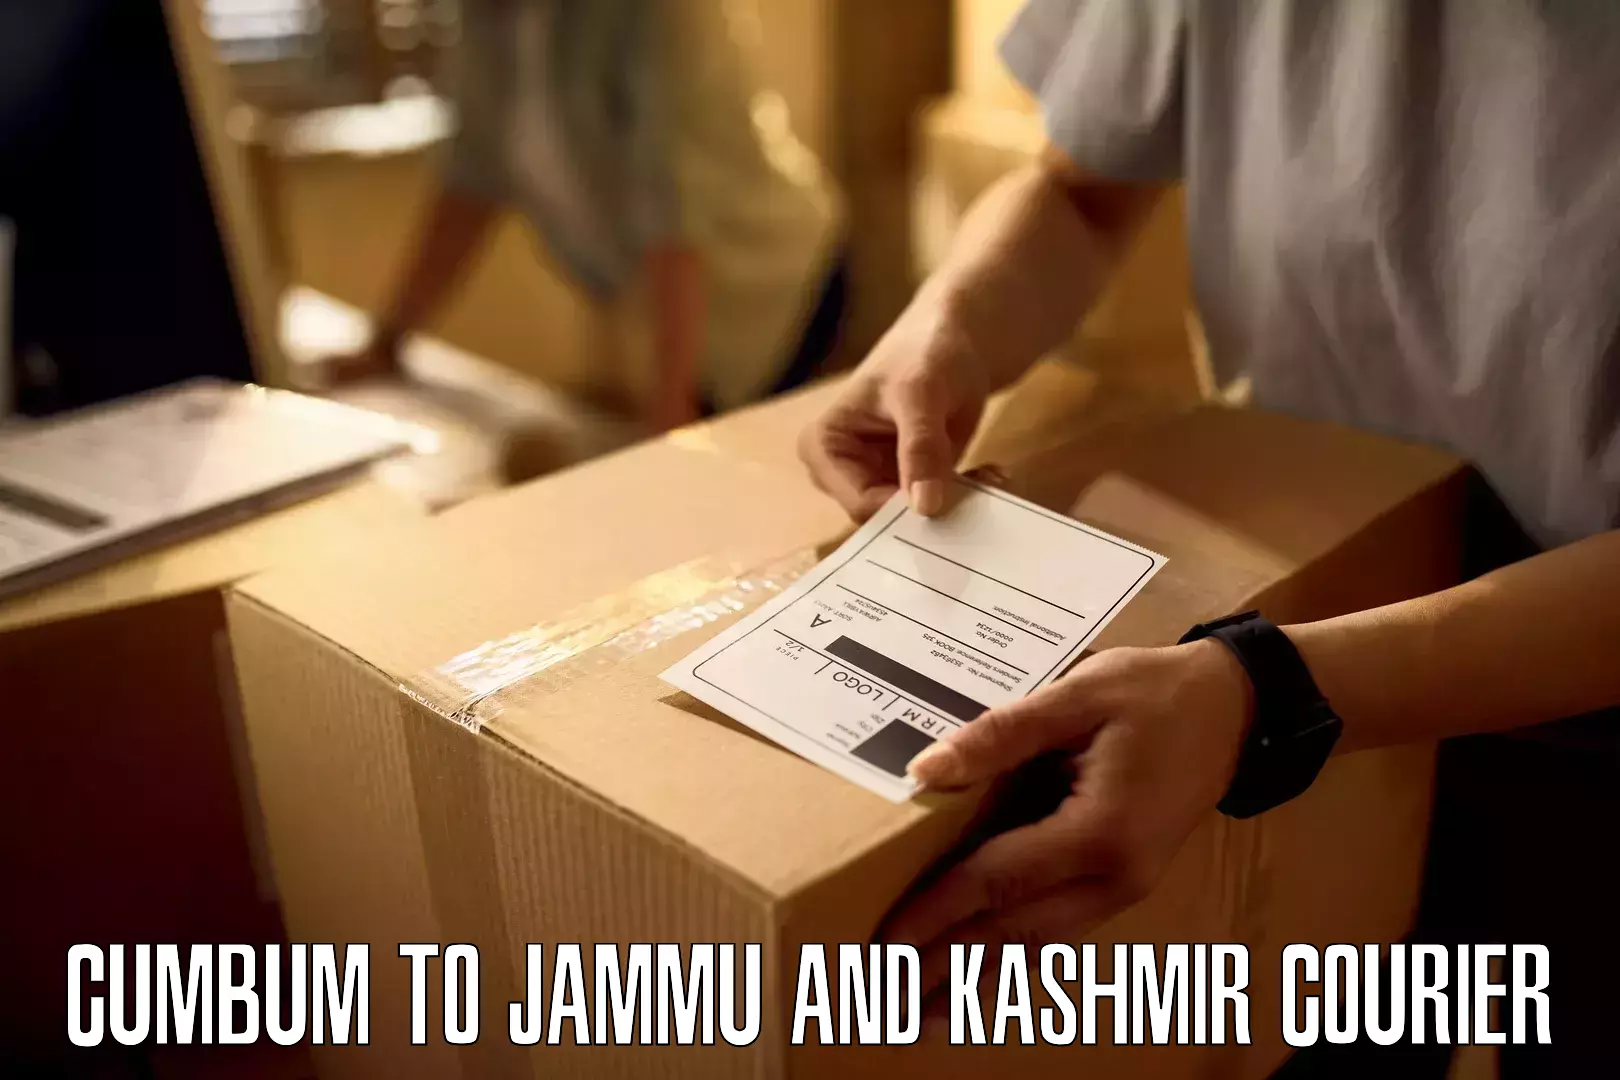 Digital courier platforms Cumbum to Jammu and Kashmir